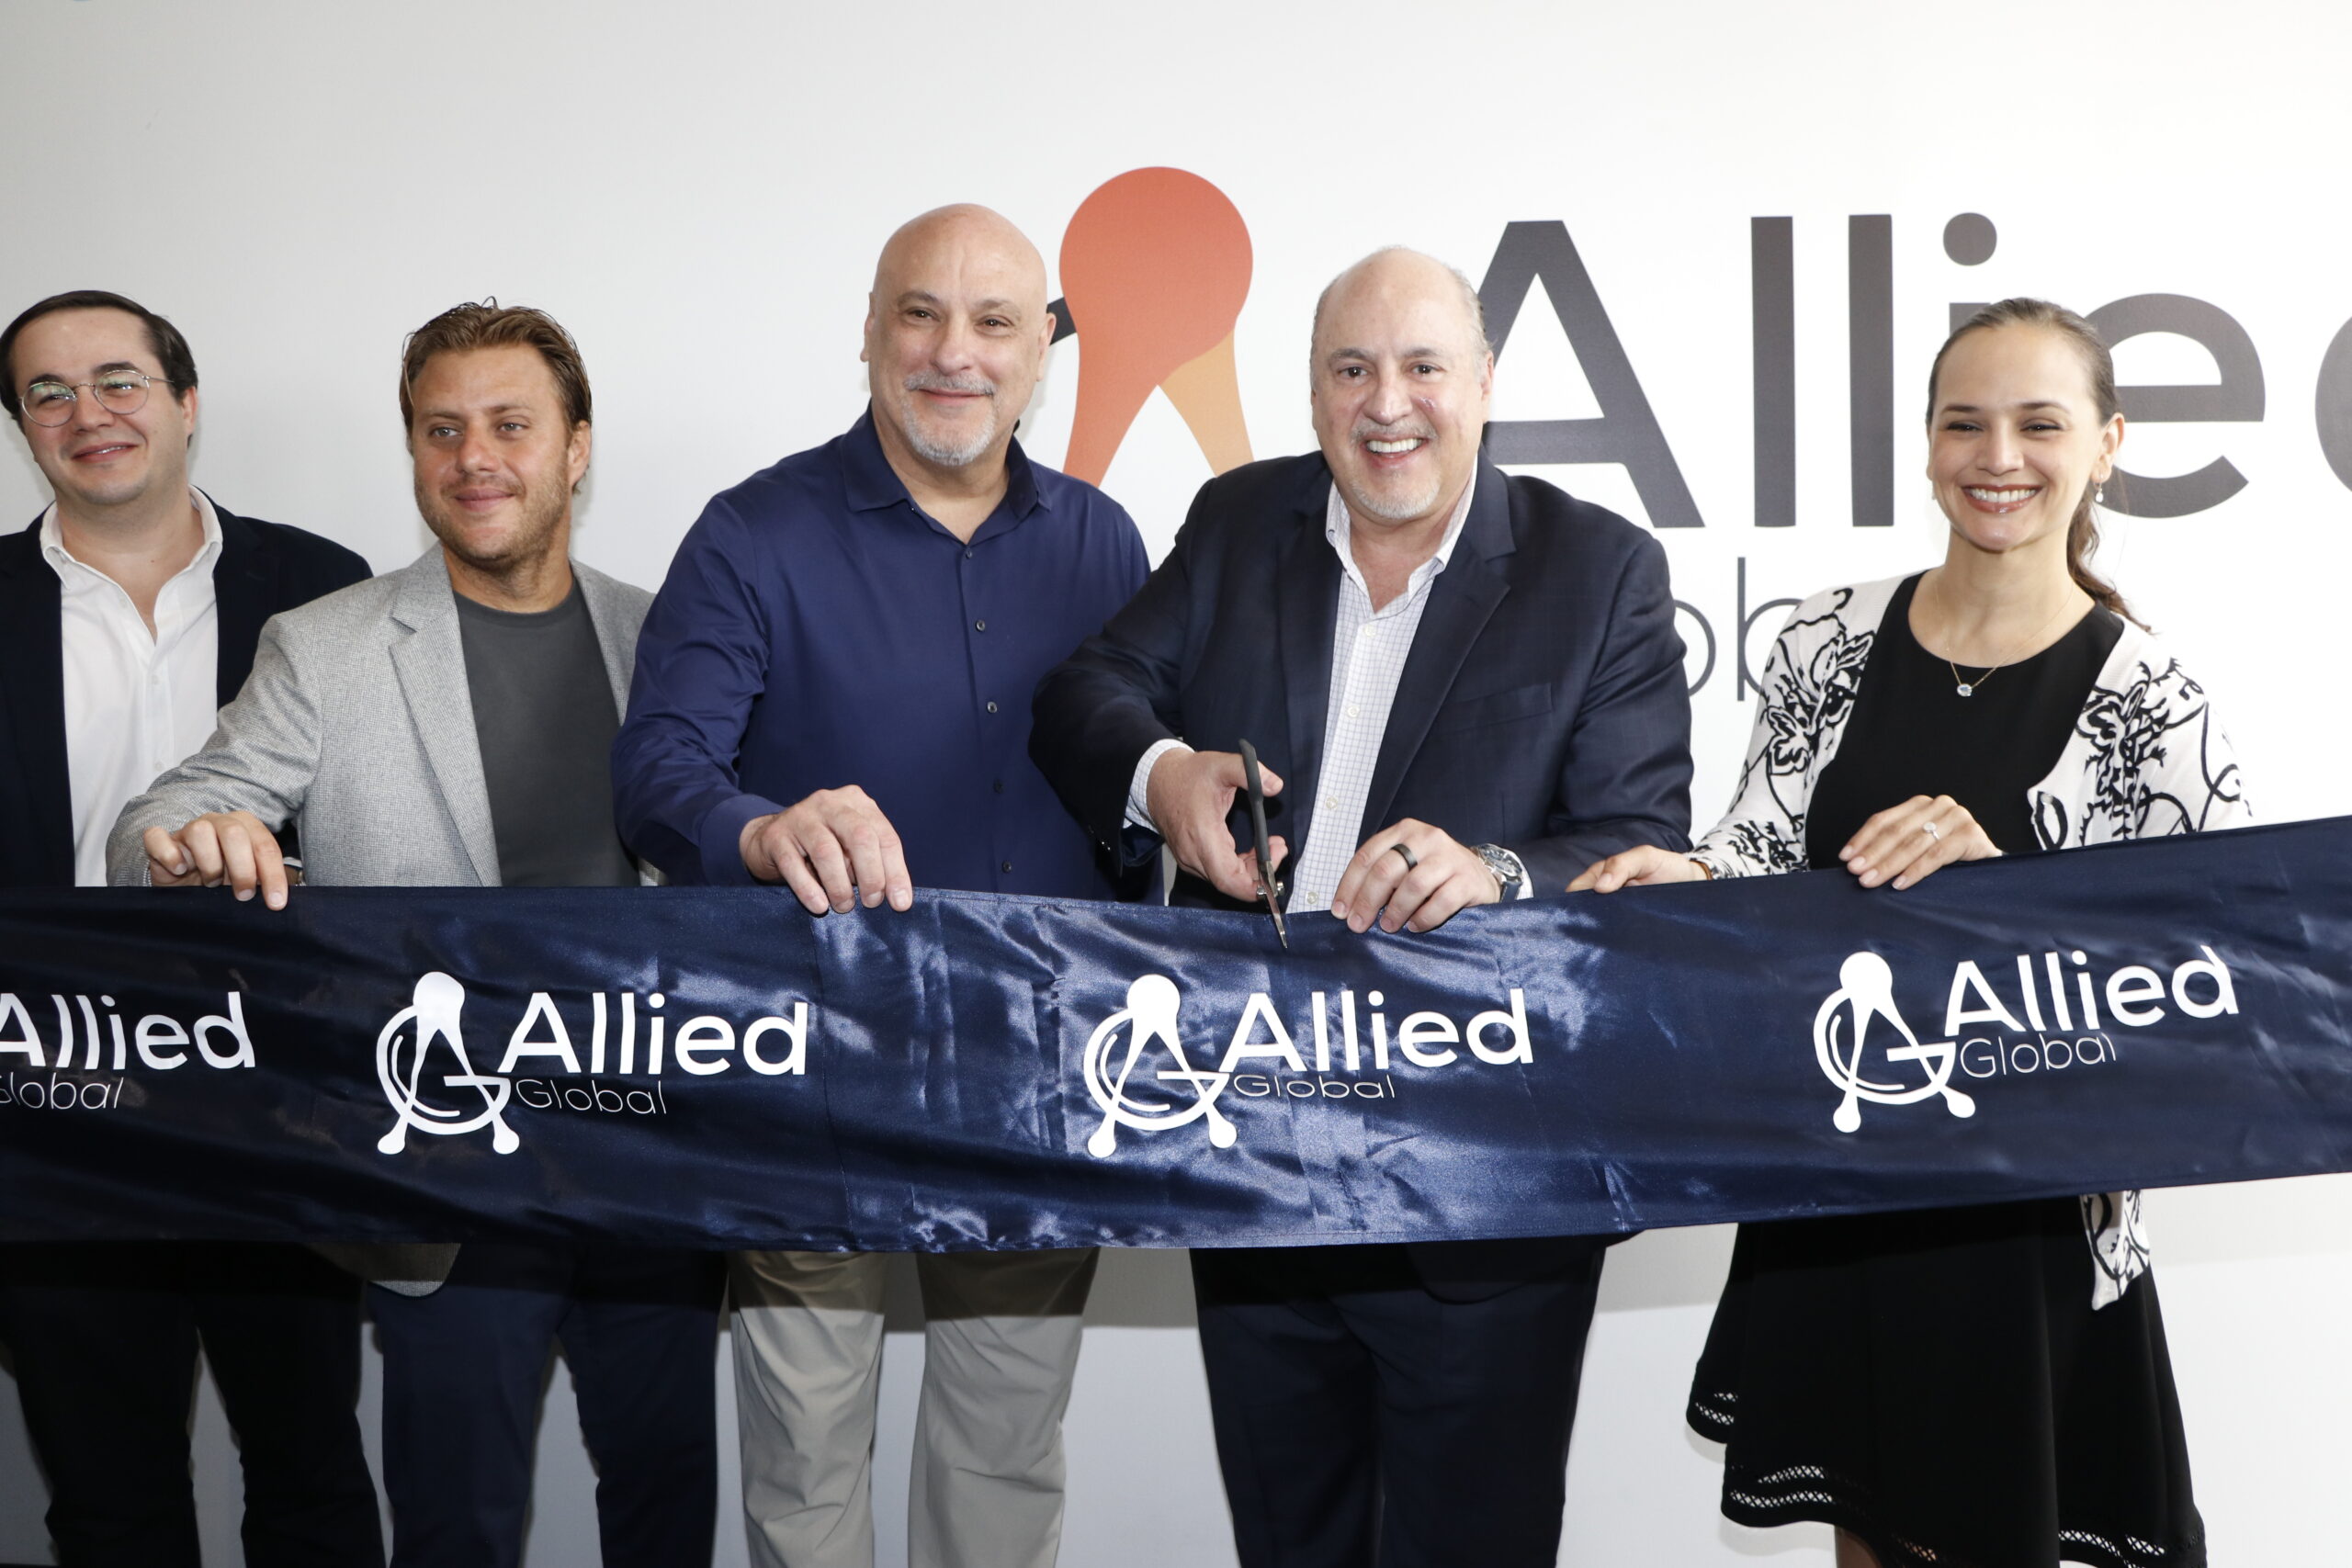 Con más de 200 plazas nuevas de trabajo, Allied Global inaugura su nueva sede enfocada en Innovación y Tecnología